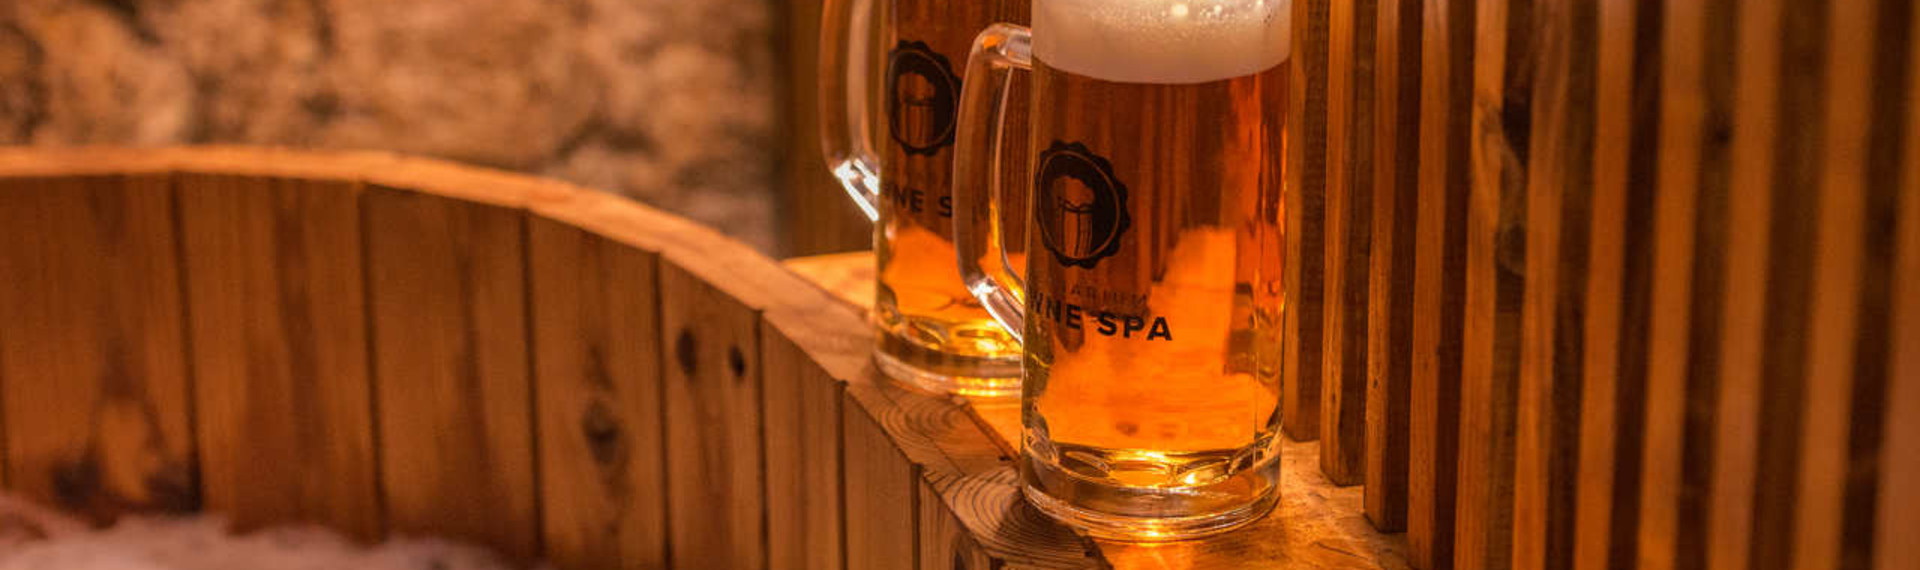 Bier Spa Krakau | Jetzt mit Pissup Reisen buchen!